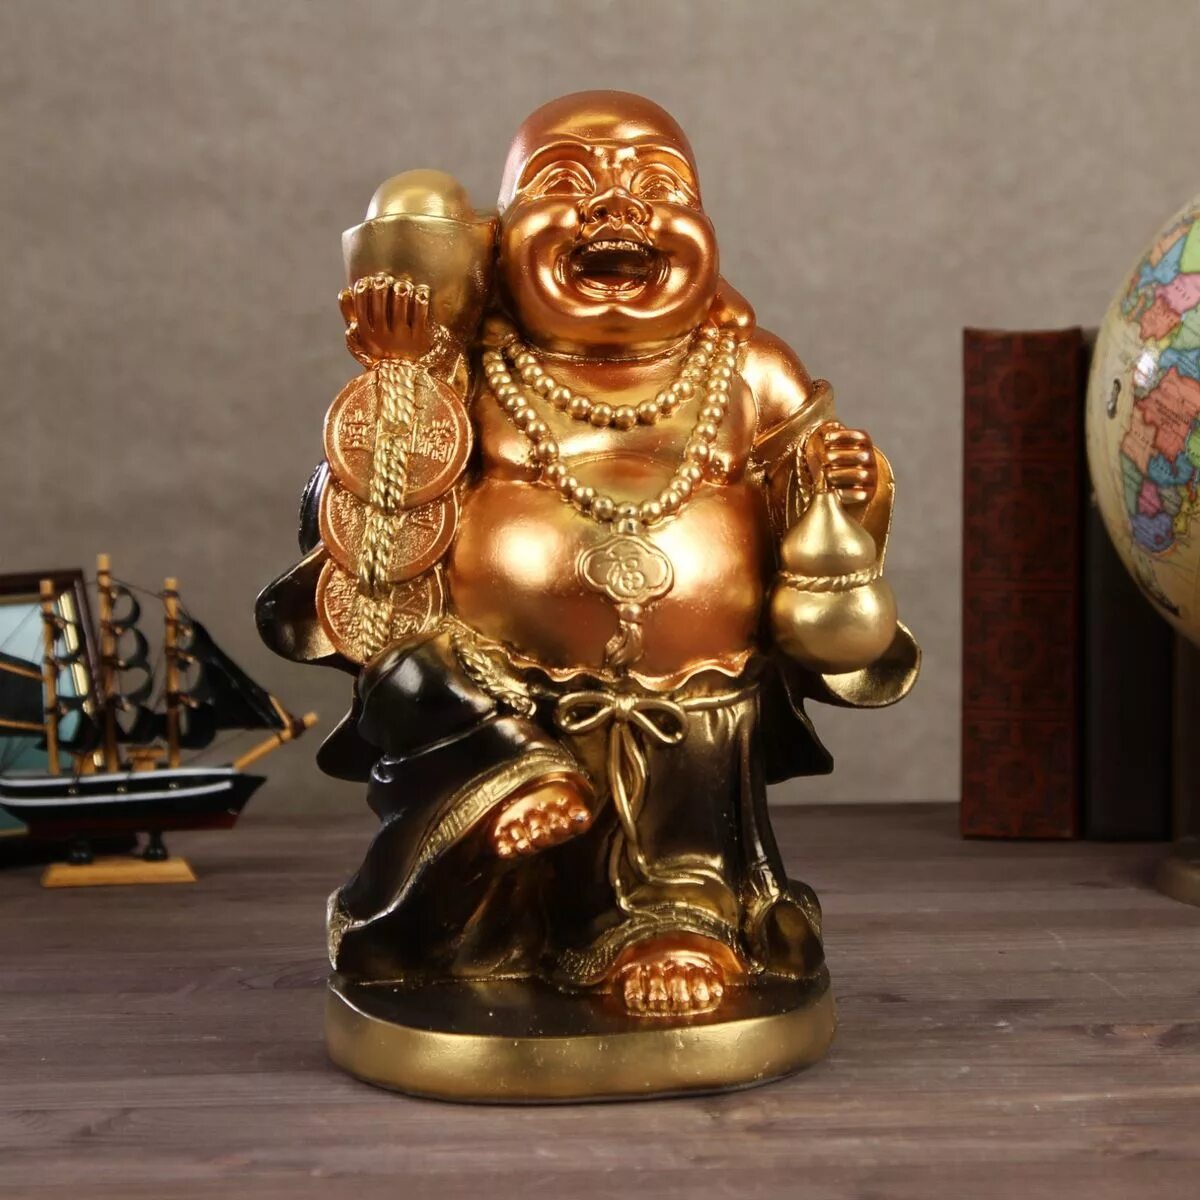 Китайский Божок Хотей. Бог богатства китайский Хотэй. Будда Хотей. Хотэй японские божества. Бог достатка